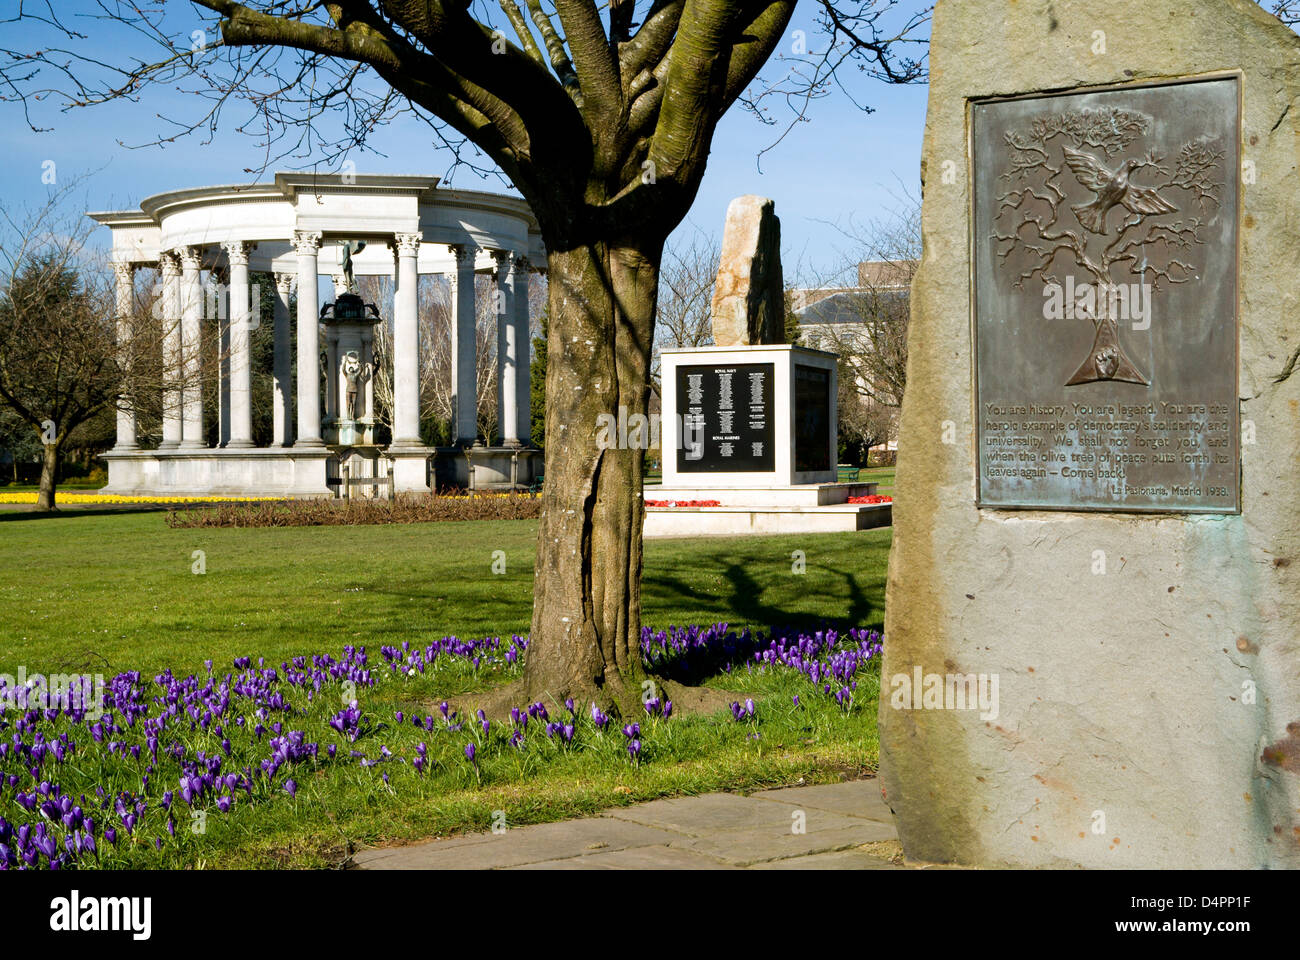 Monument commémoratif de guerre, Alexandra Gardens, Cathays Park, Cardiff, Pays de Galles. Banque D'Images